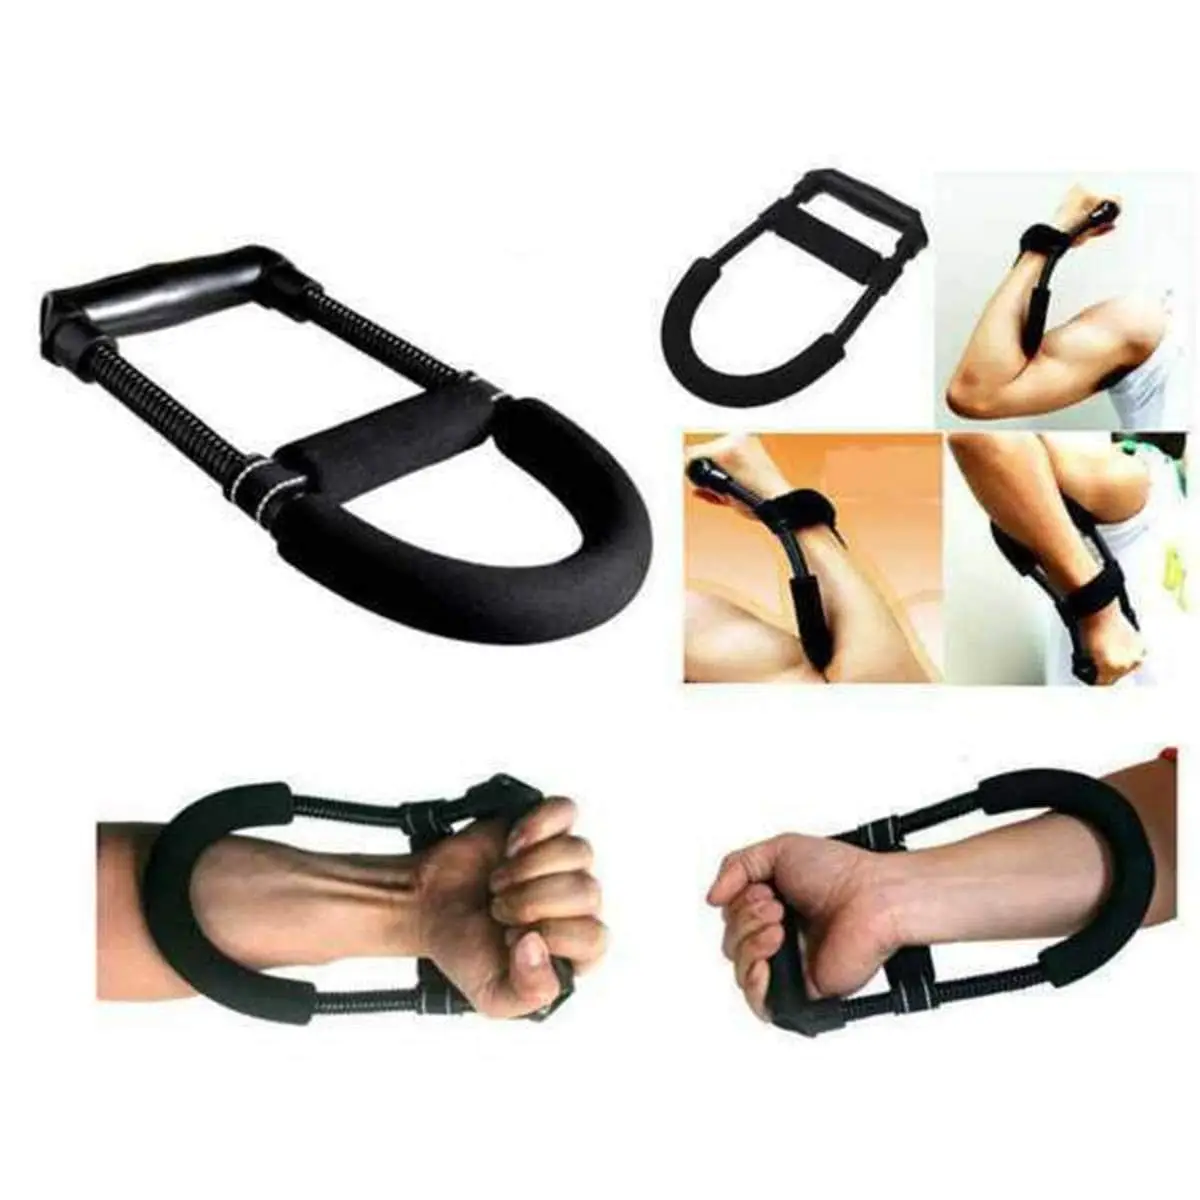 Wrist strengthener, forearm exerciser, hand developer arm, hand grip exercise strength training device